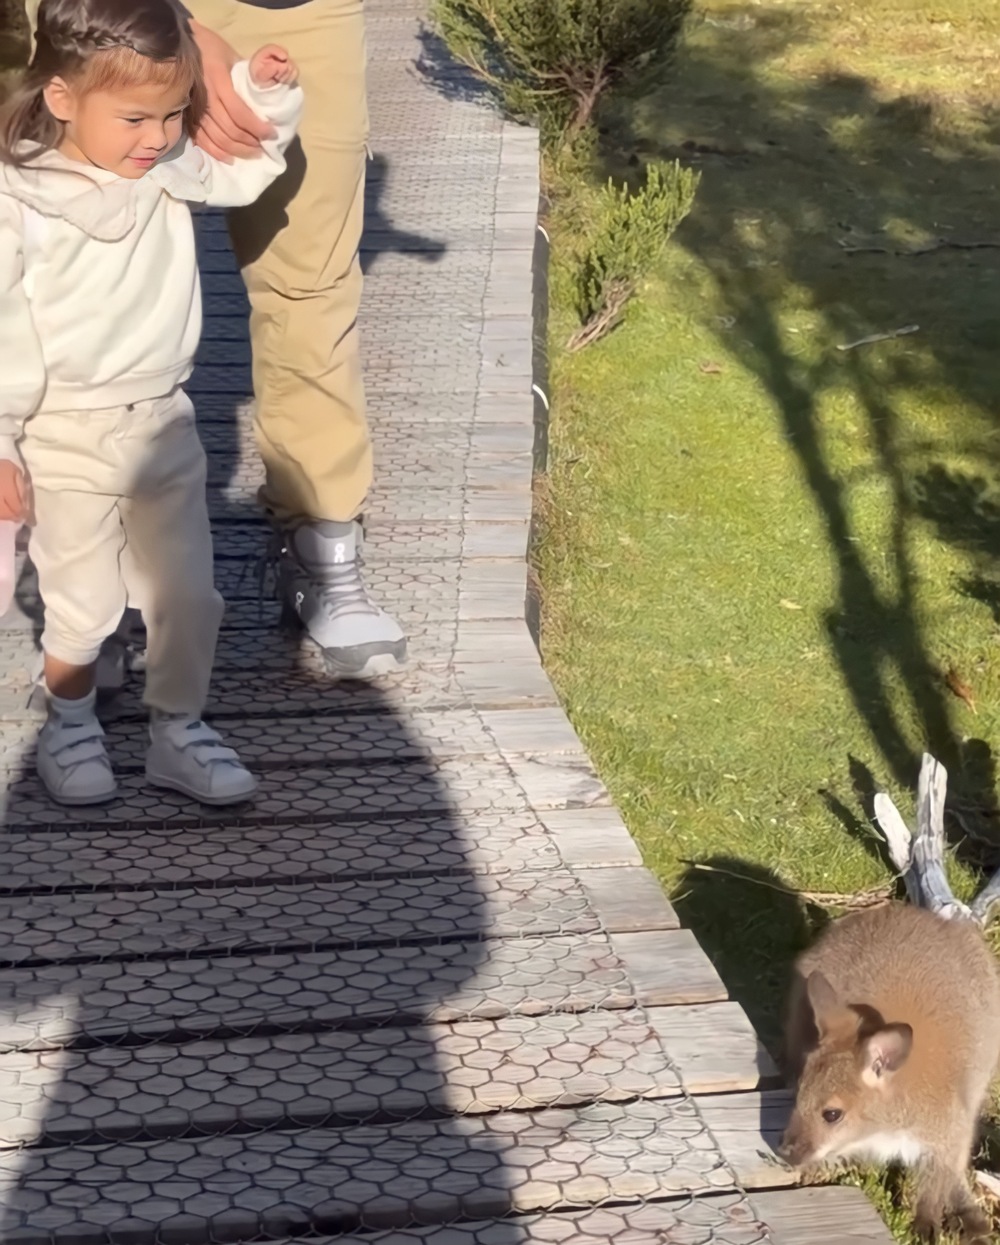 Dahlia Heussaff and Anne Curtis meet a baby kangaroo